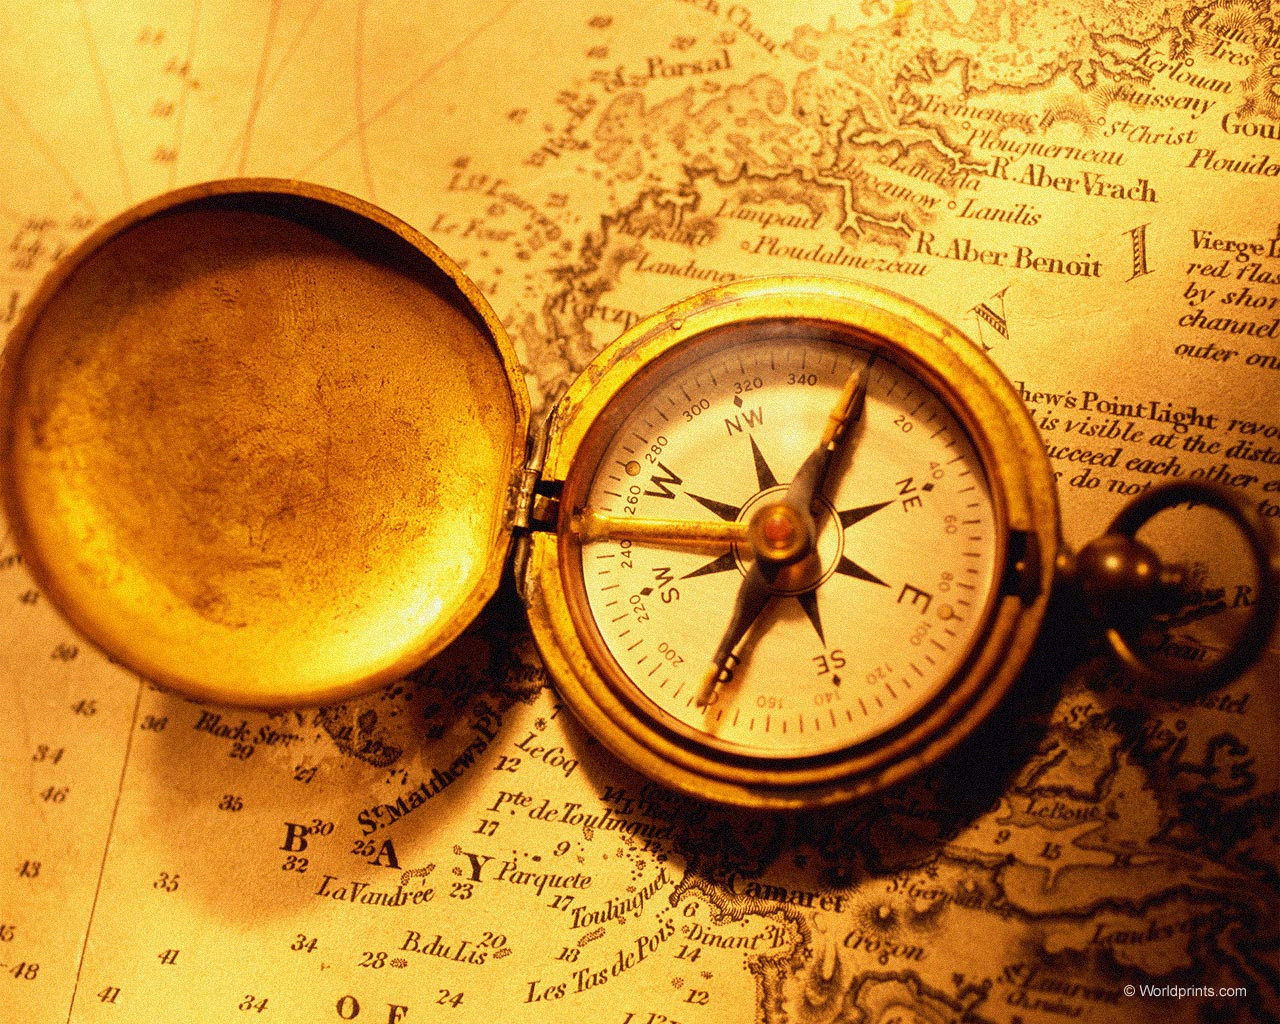 A gold compass atop a map guiding through international trade laws.